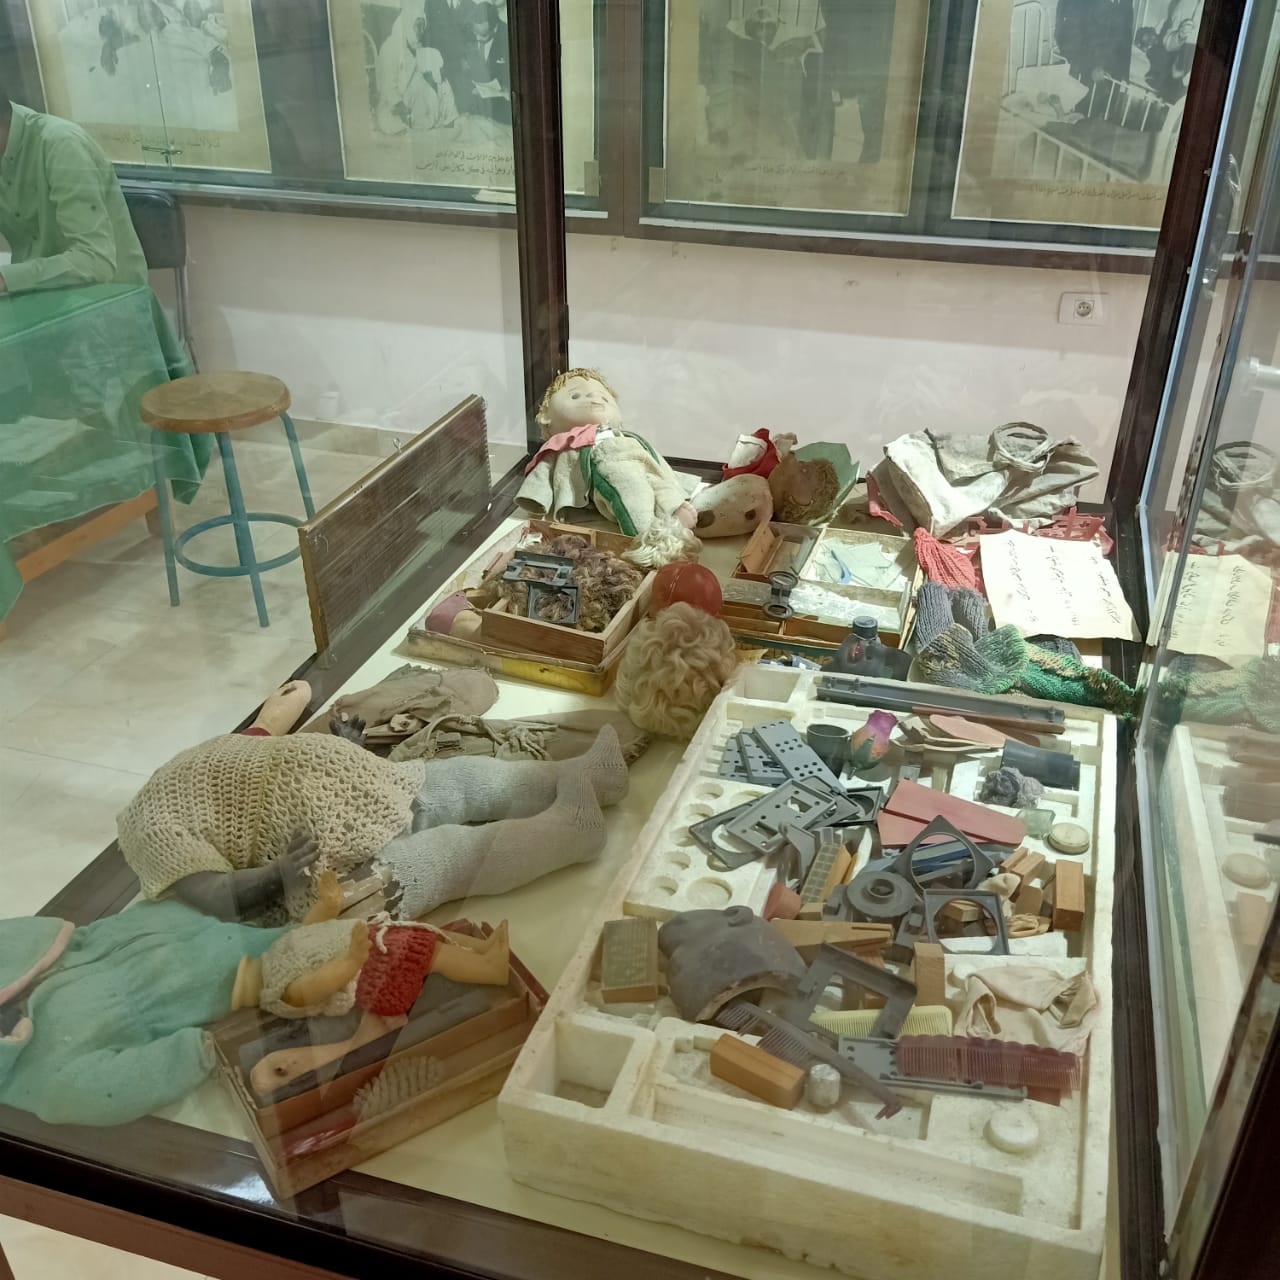  كتب وكراسات وملابس شهداء مذبحة بحر البقر بمتحف المدرسة (10)